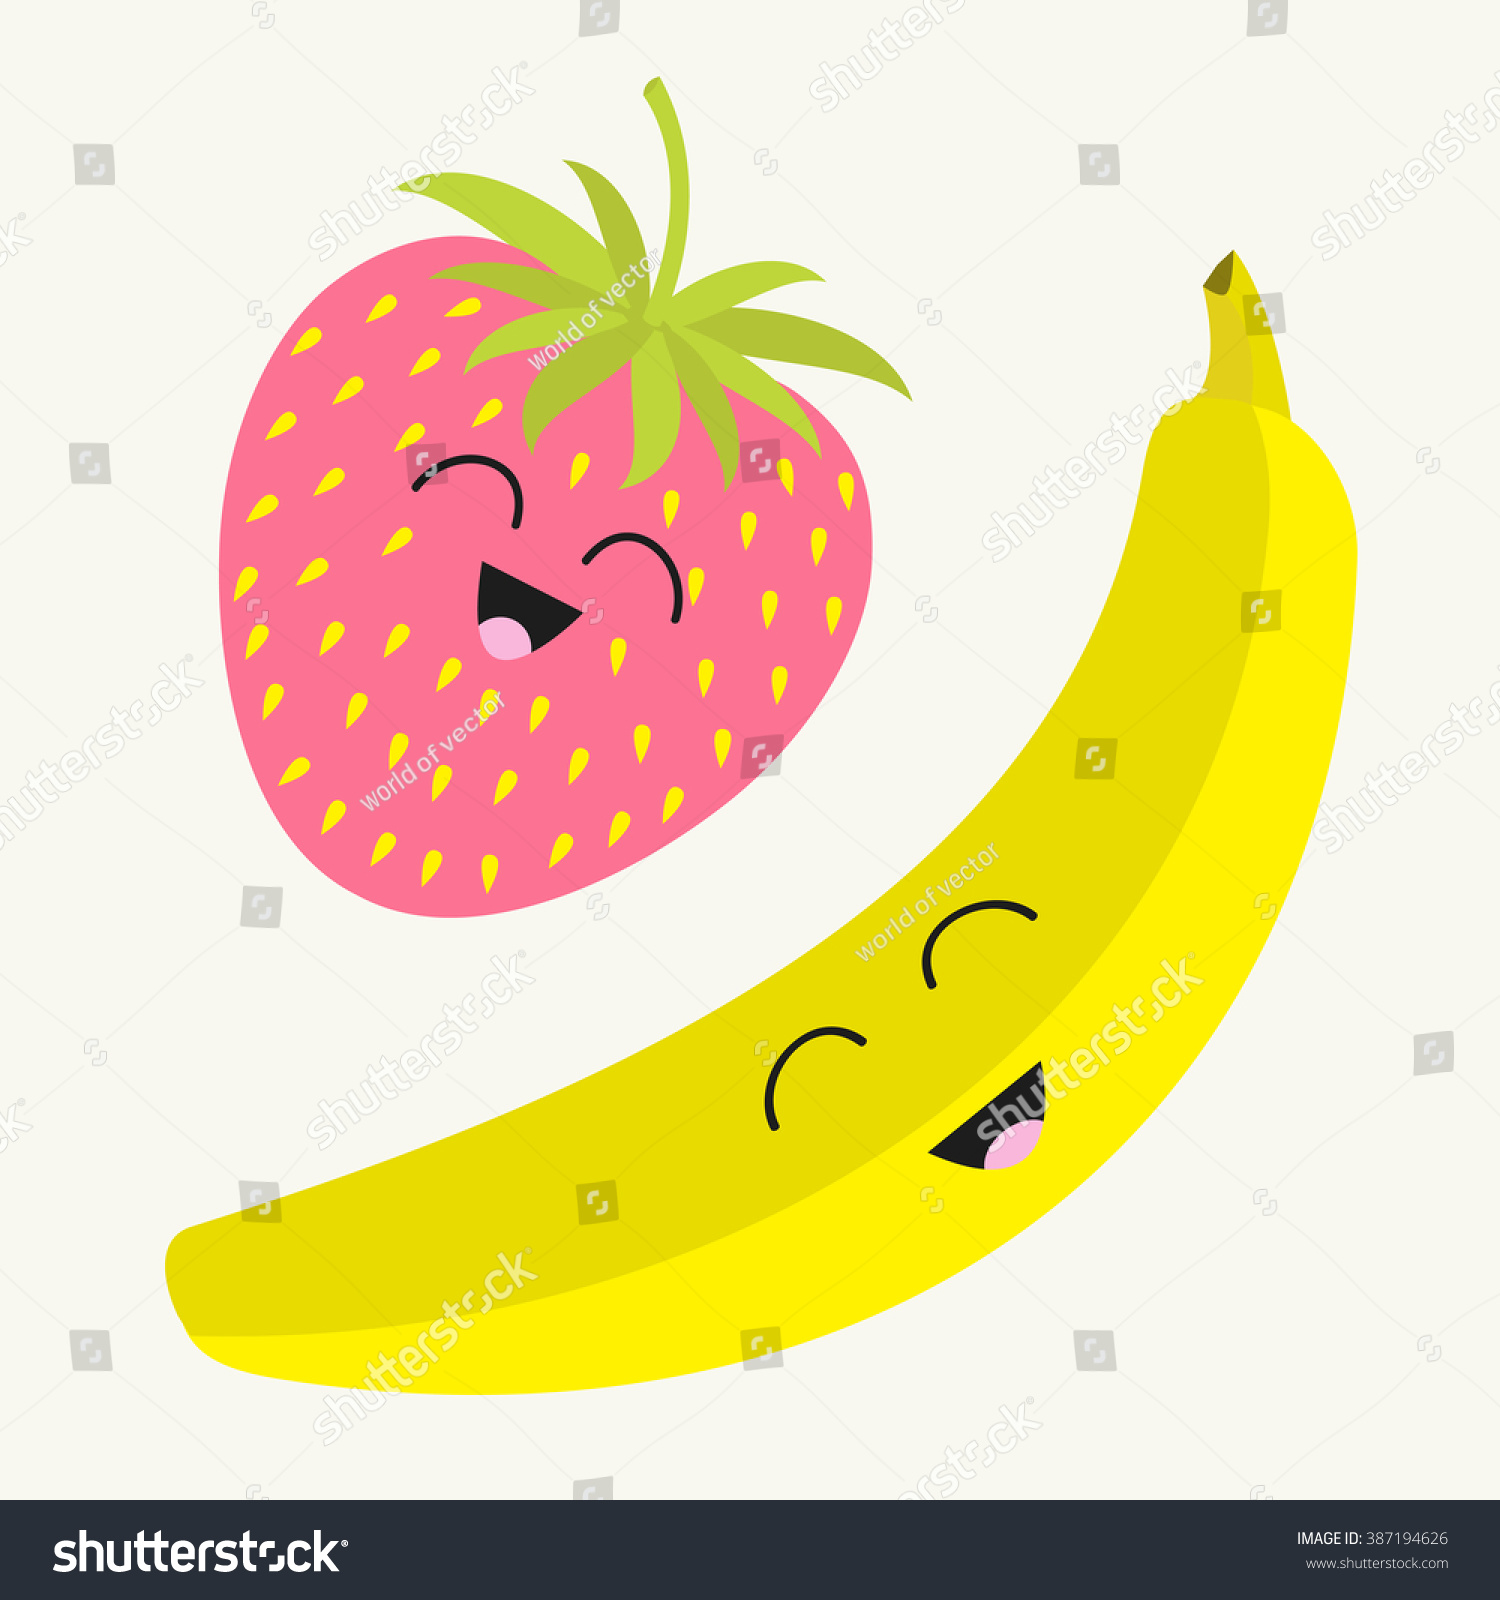 strawberry banana clipart - photo #11